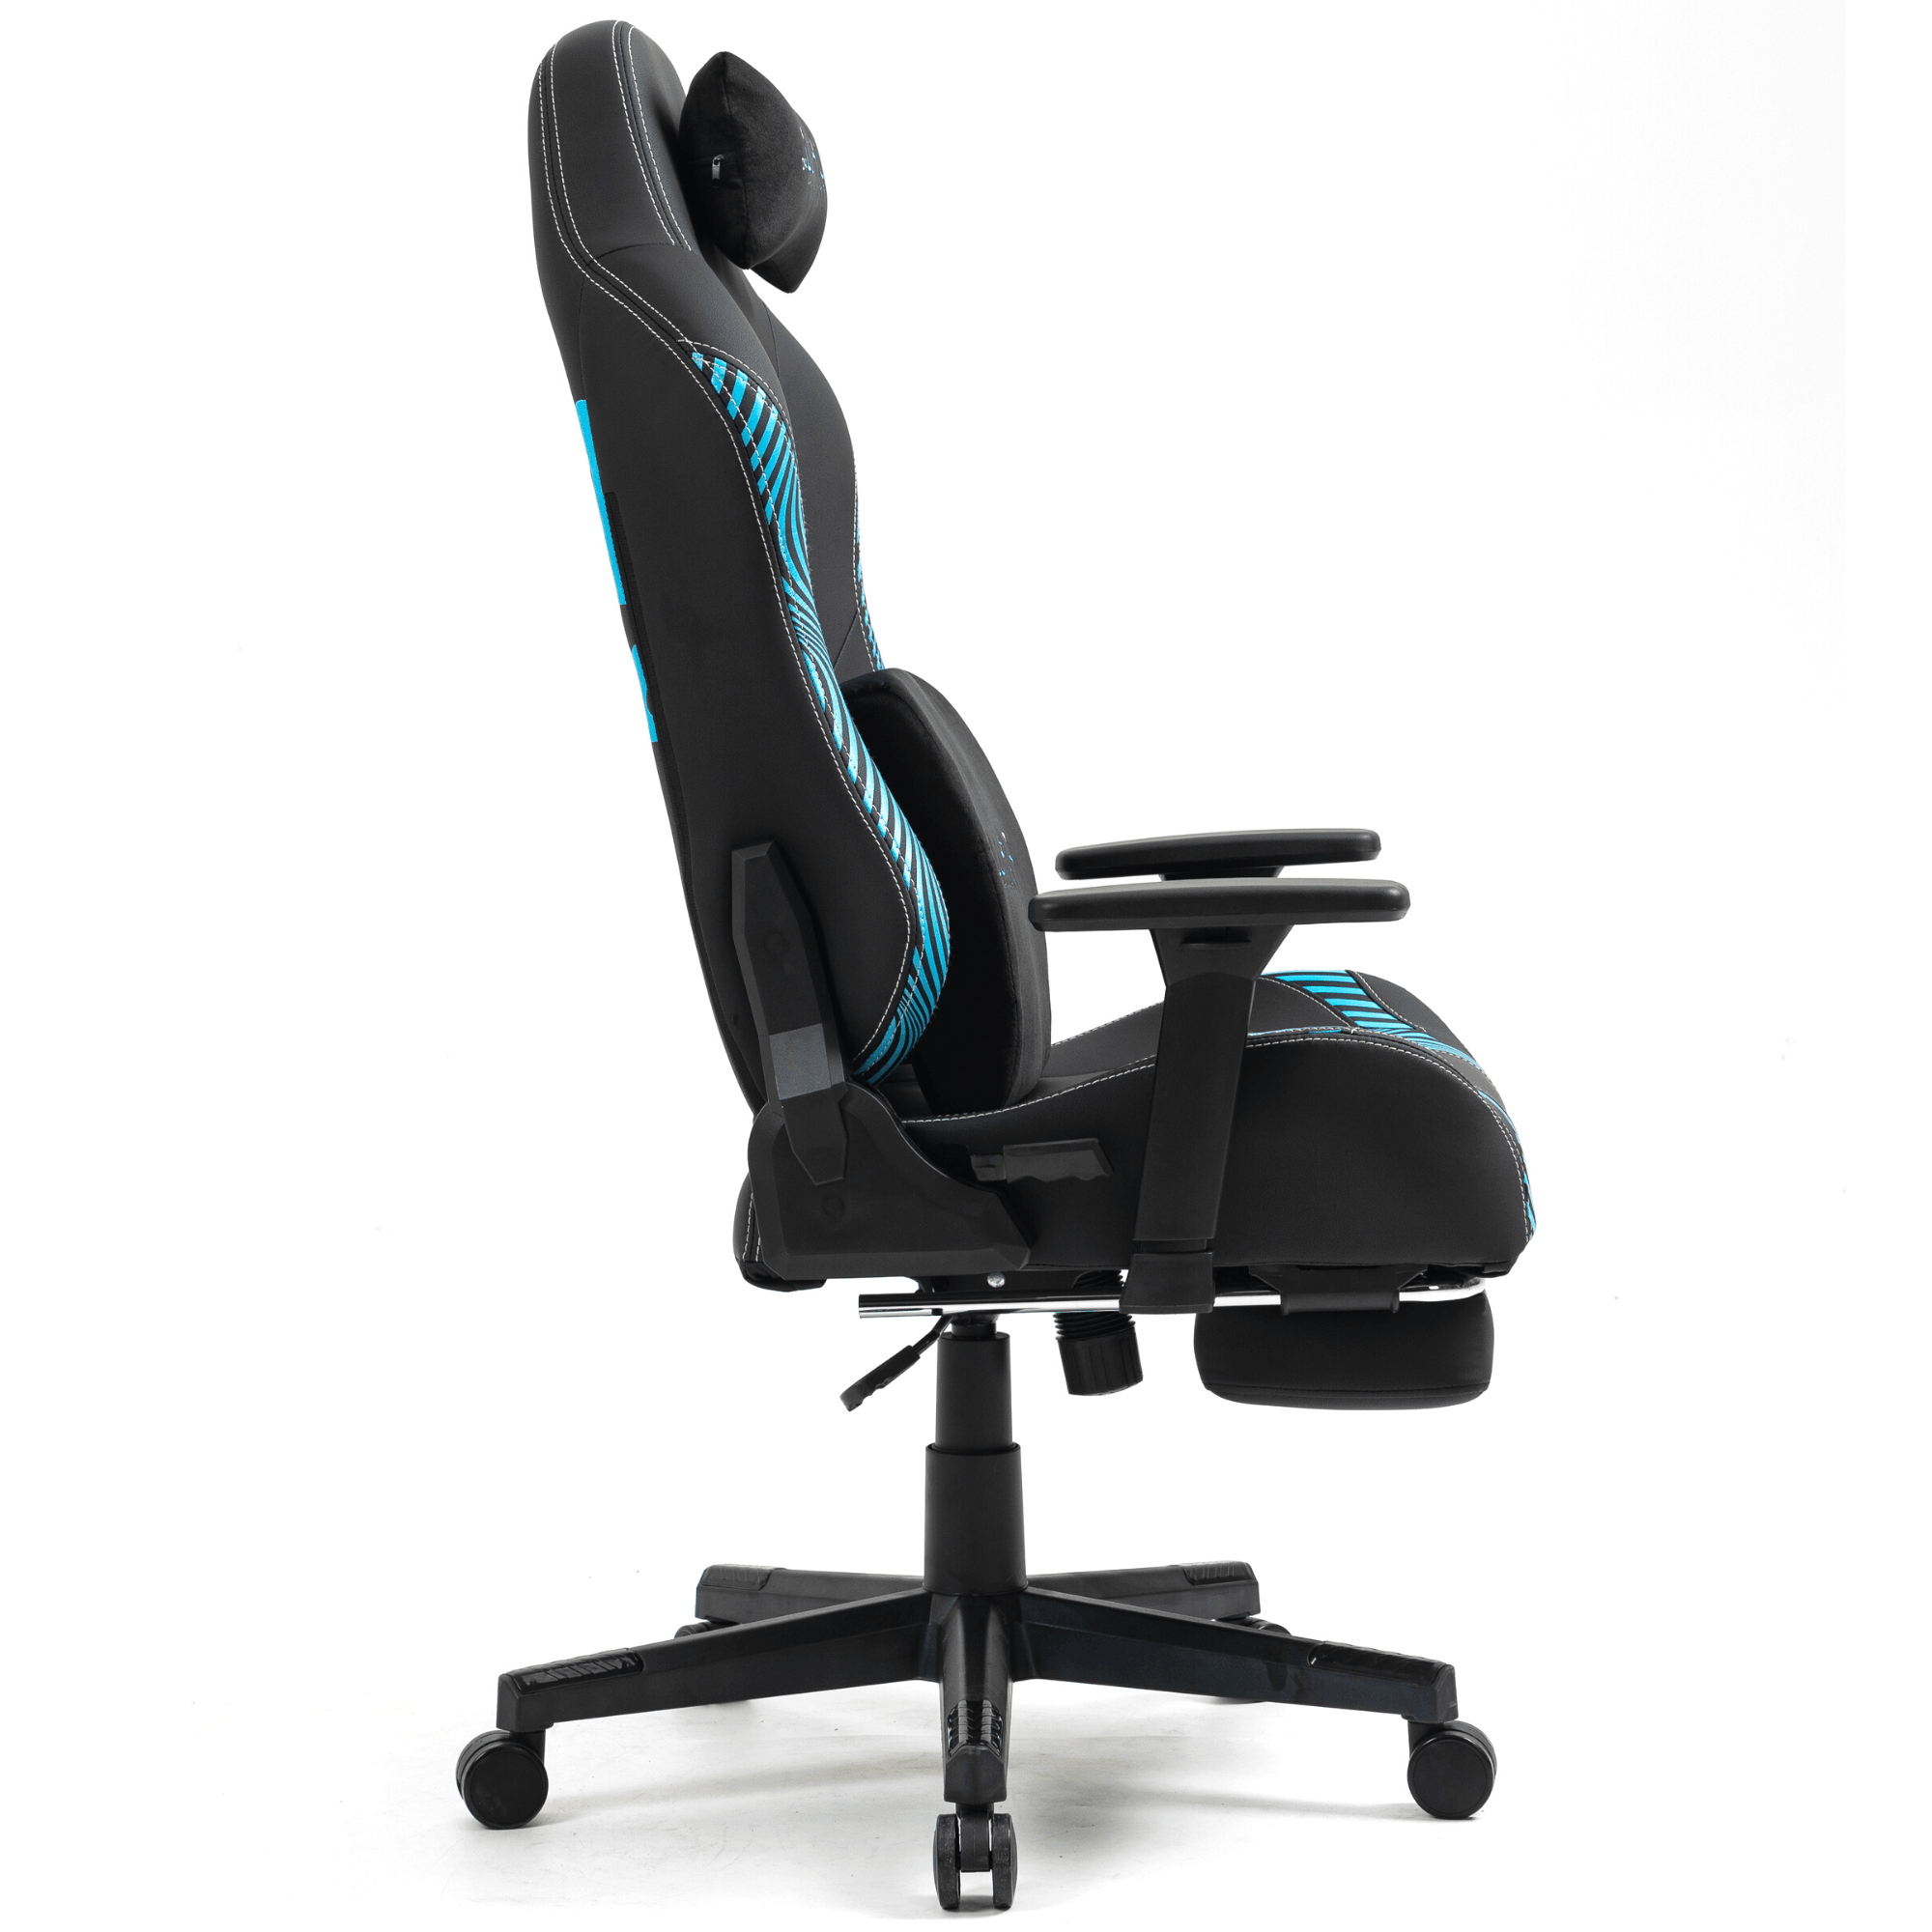 DrLuxur DEVIL Gaming Chair - DrLuxur